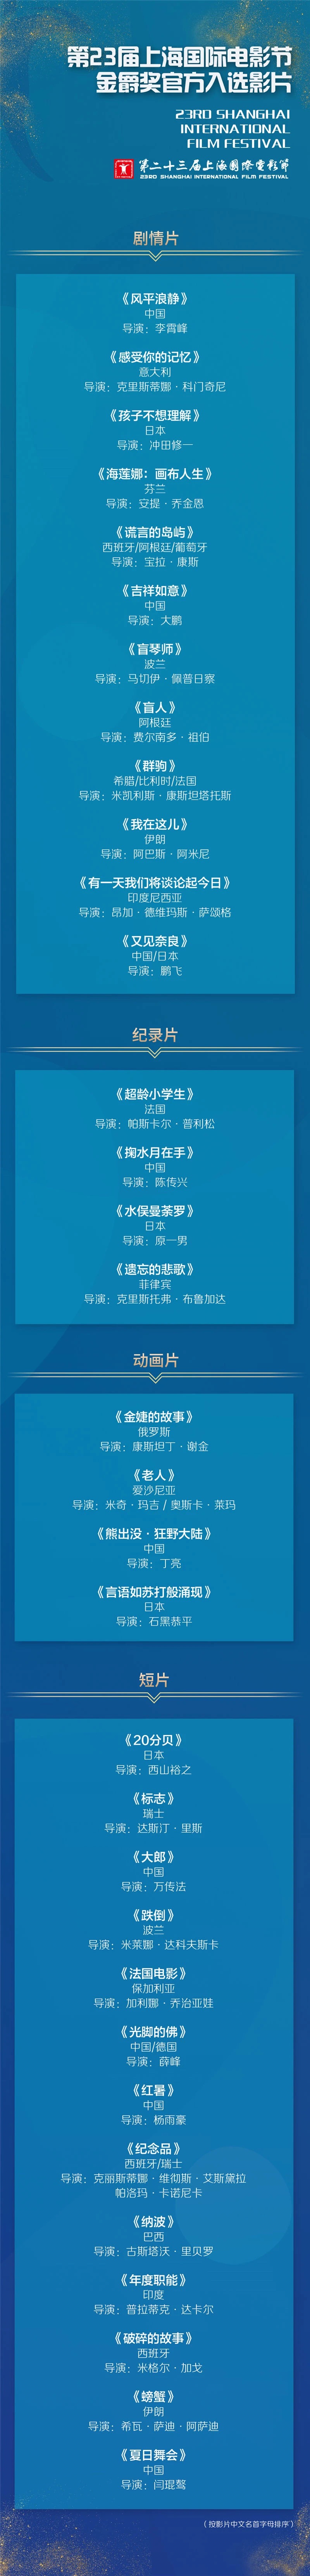 第23届上海国际电影节发布金爵奖官方入选影片名单